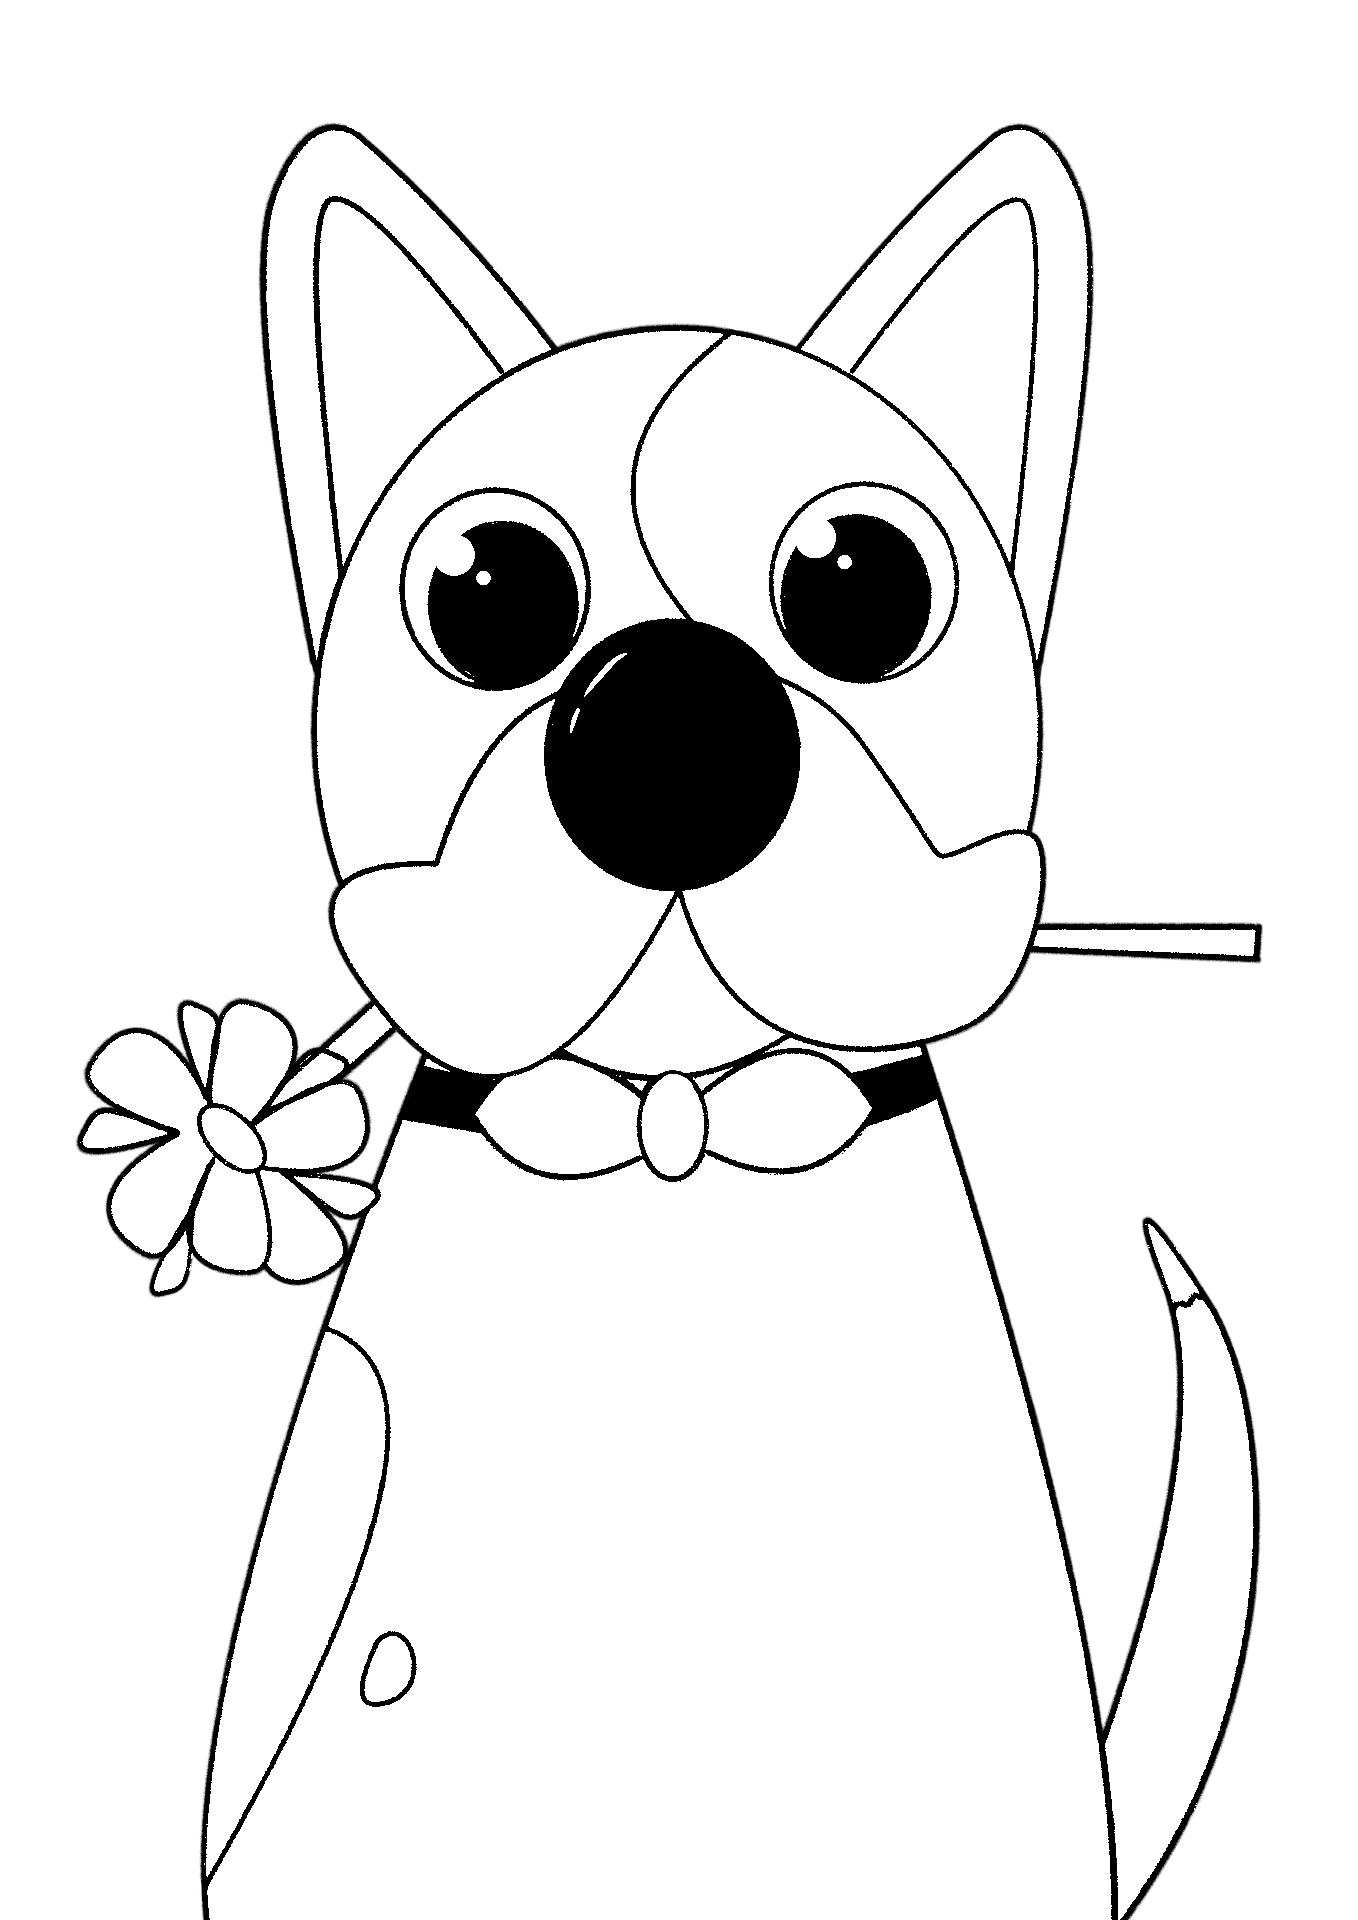 Disegno da colorare di cane kawaii con fiore in bocca